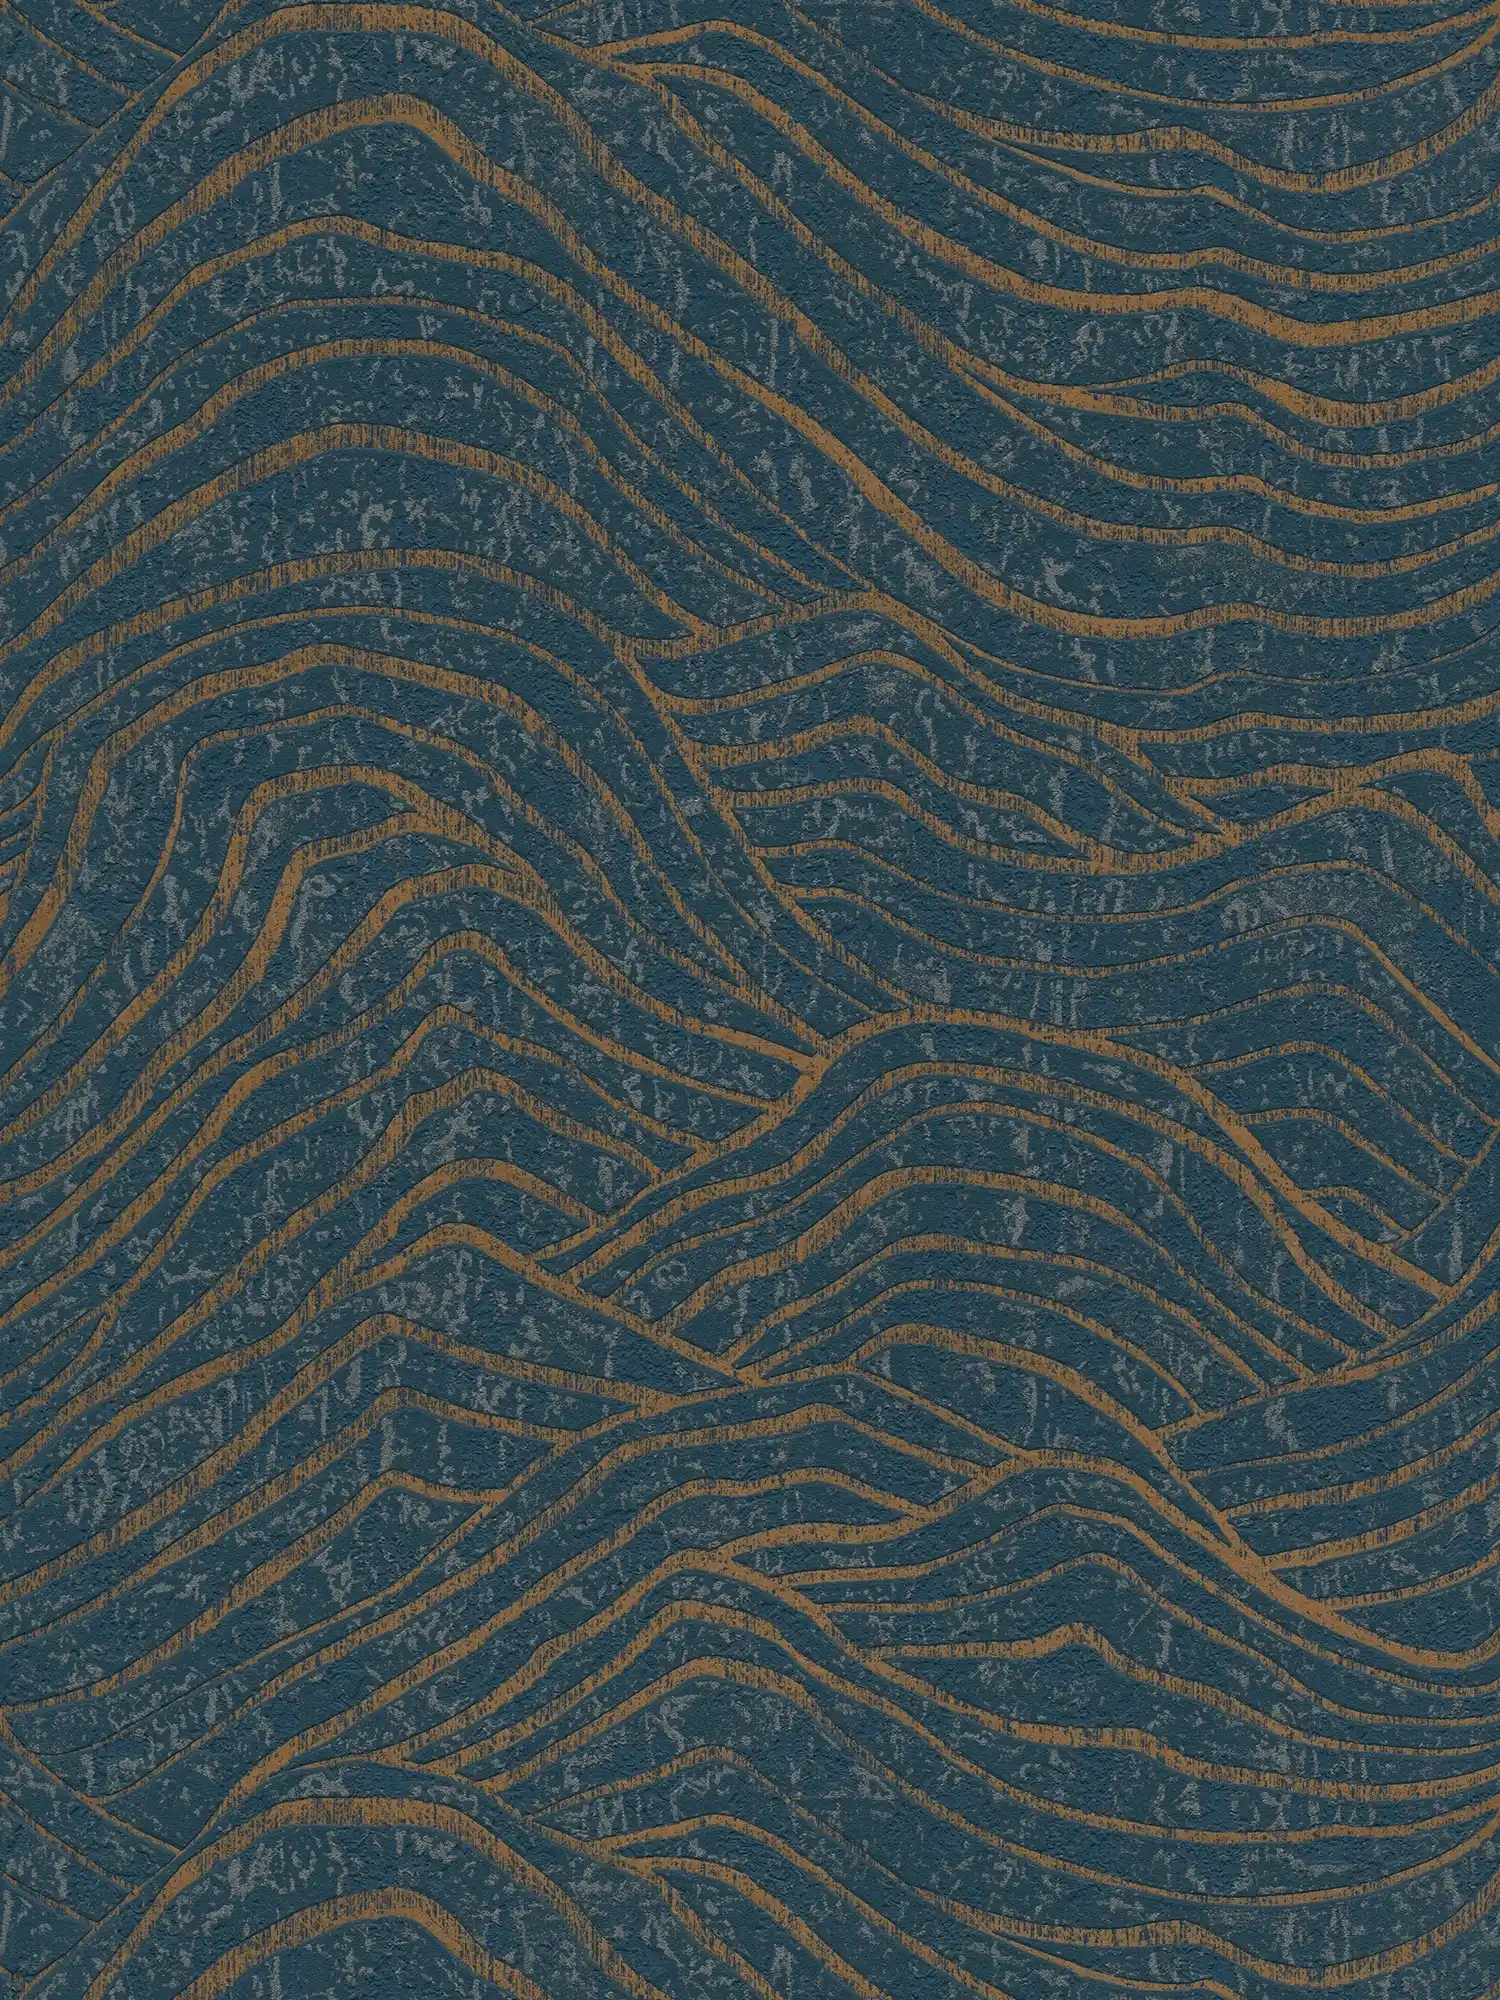 Onderlaag behang met abstract heuvelpatroon - donkerblauw, goud
